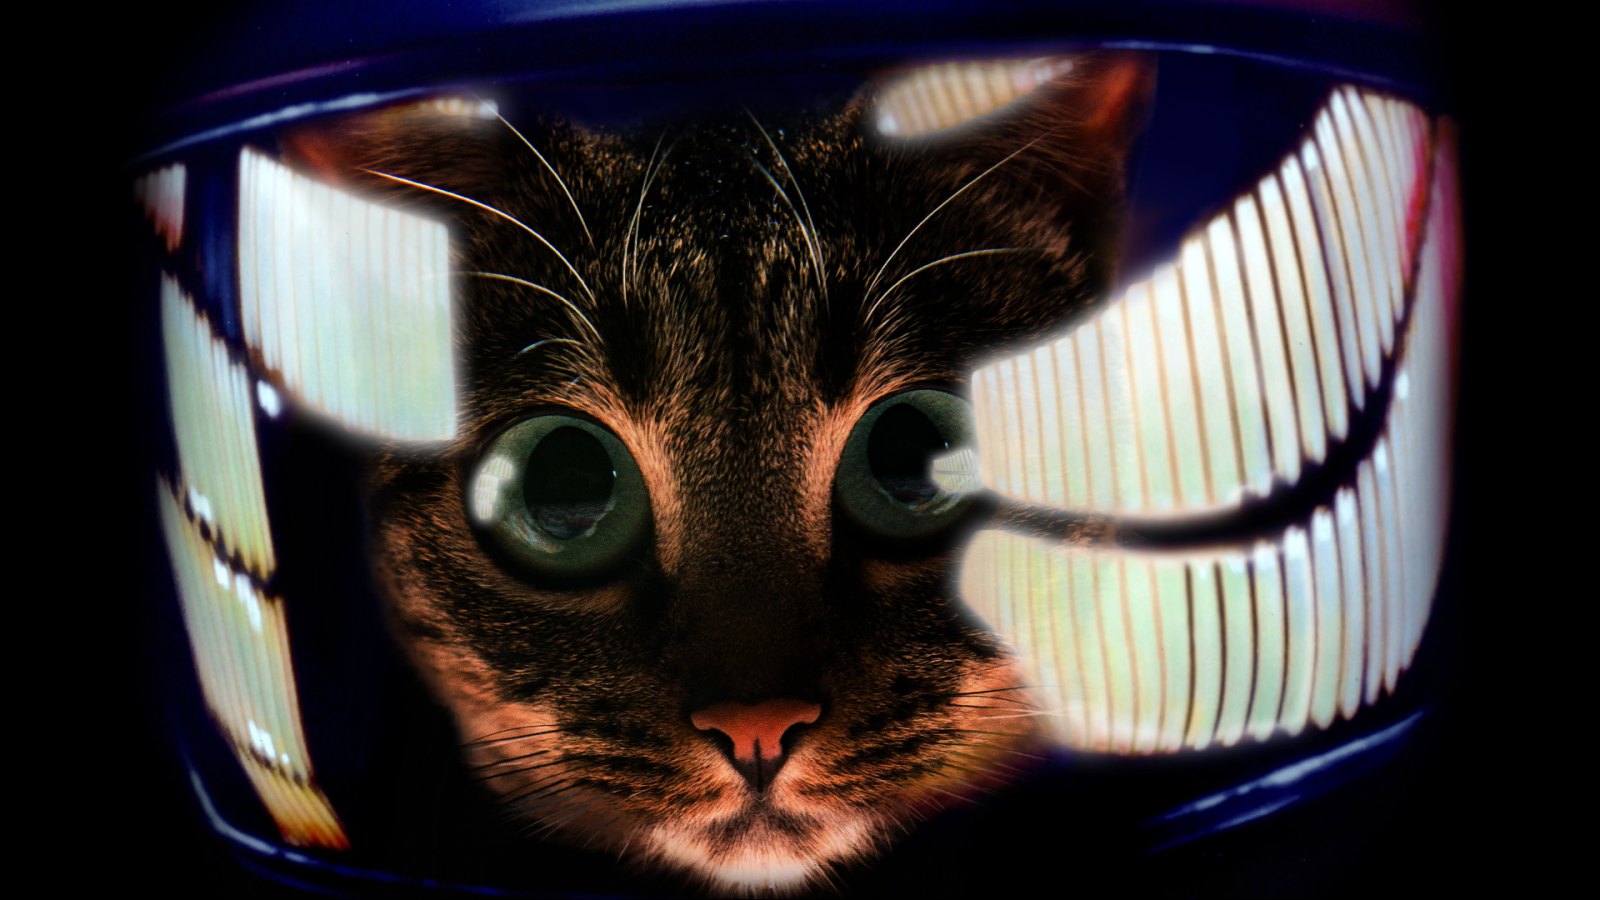 Descarga gratuita de fondo de pantalla para móvil de Animales, Gatos, Gato, Futurista.